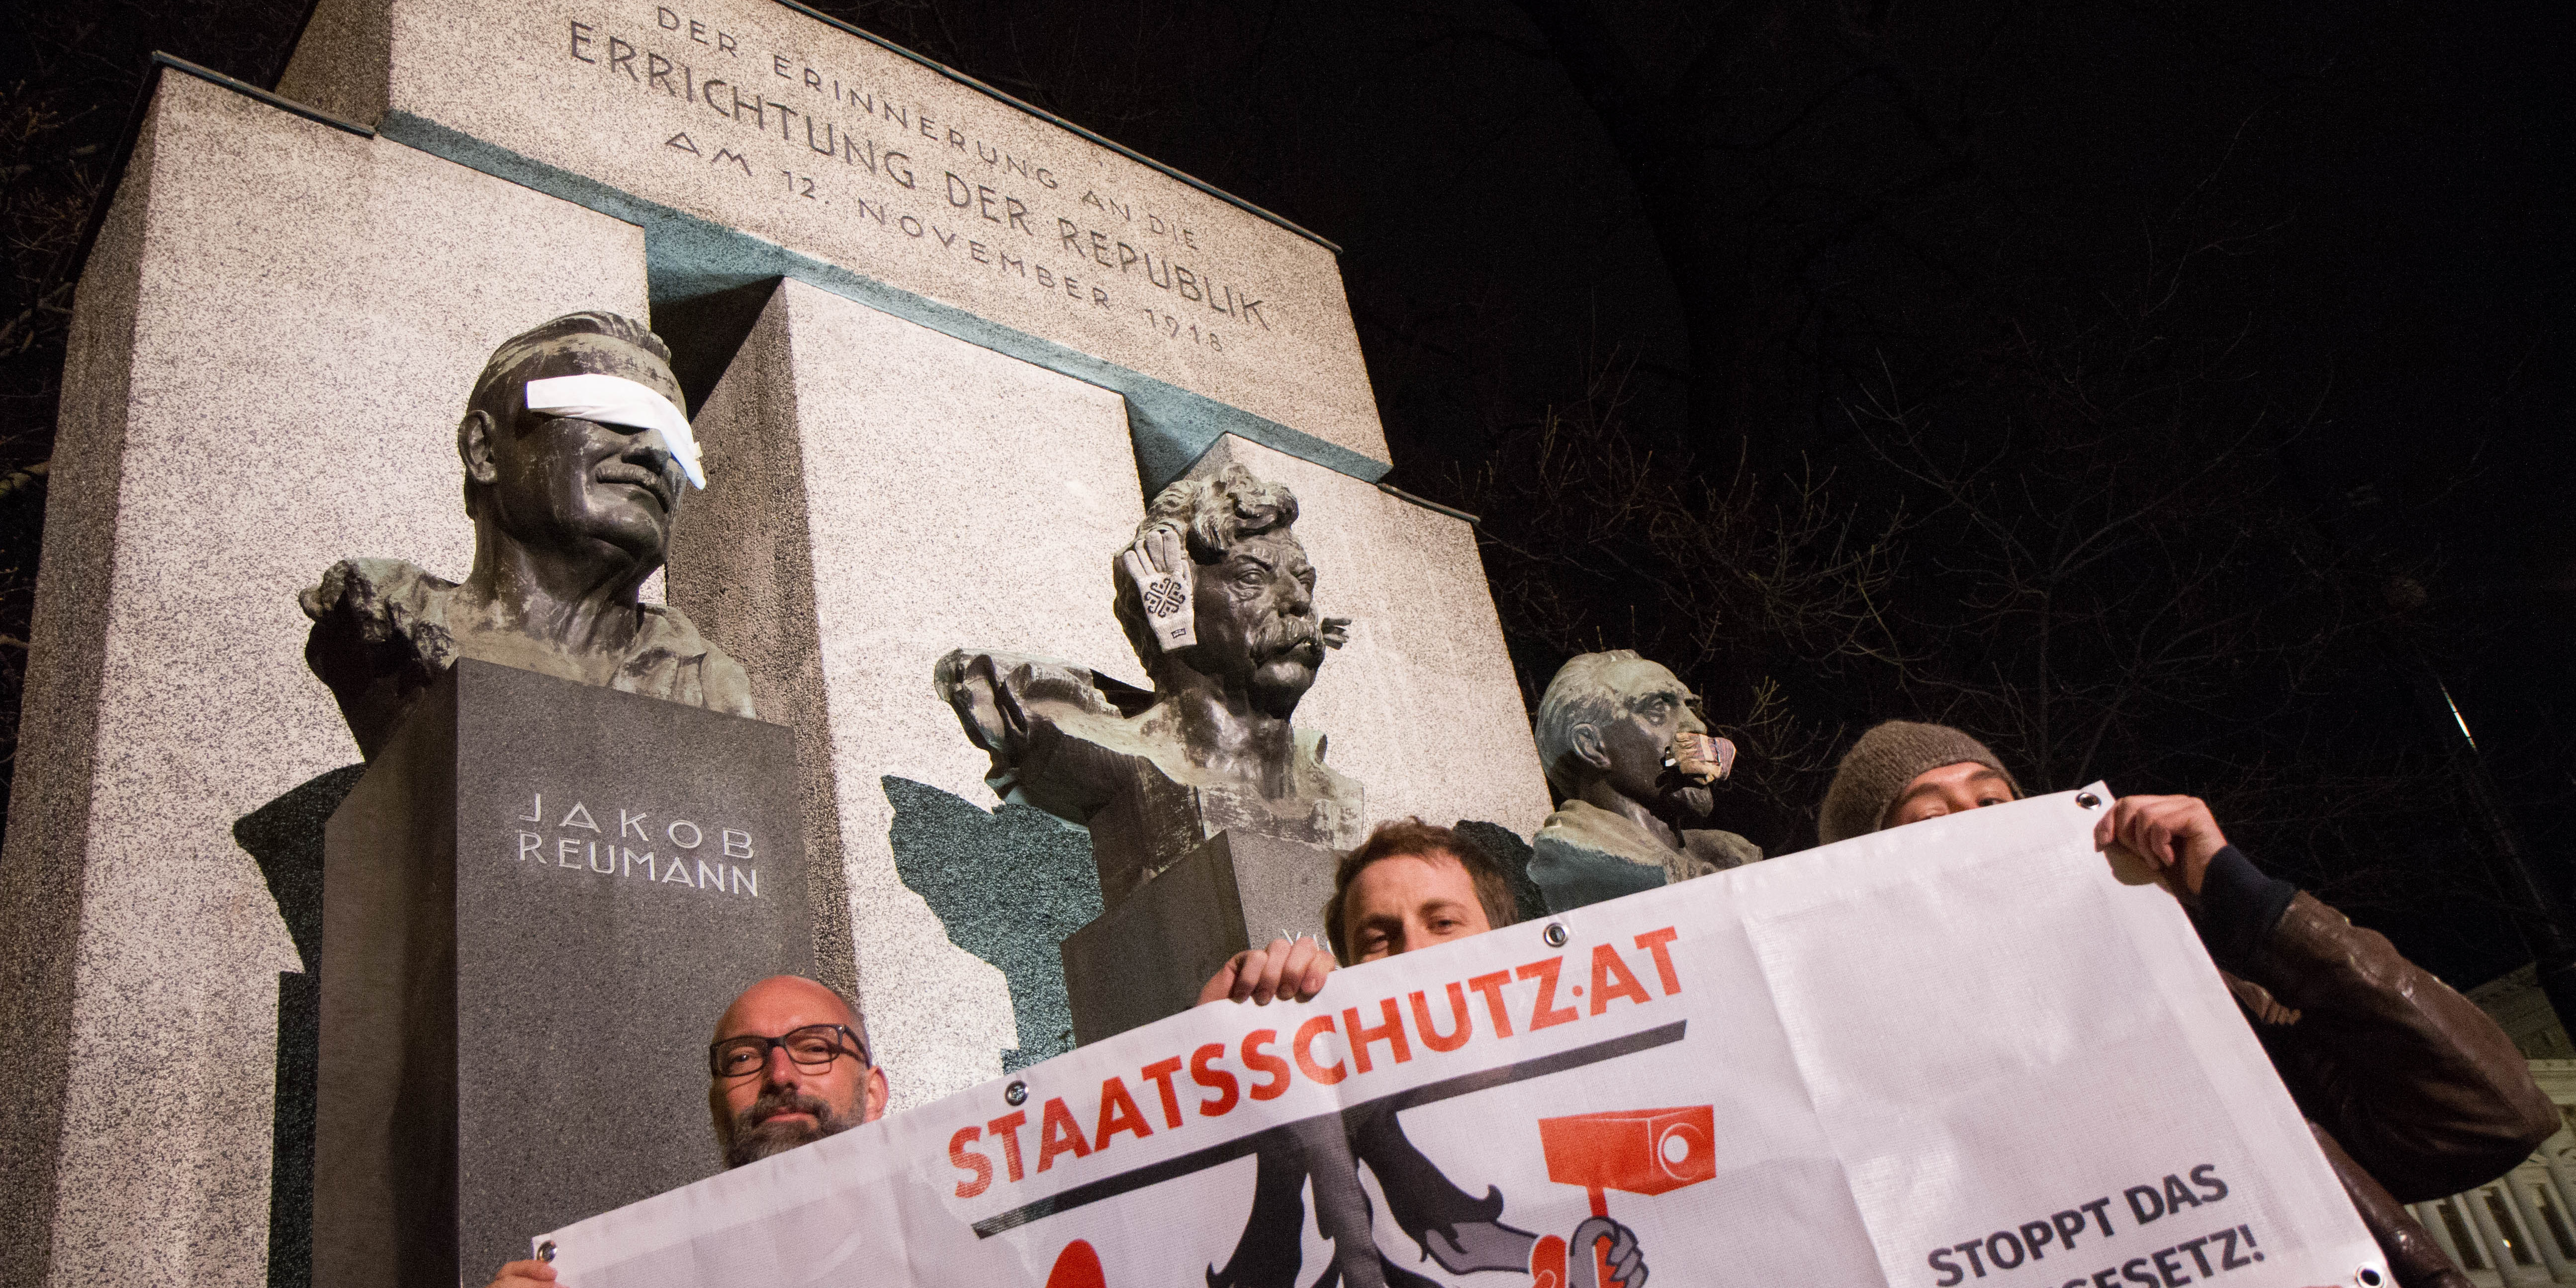 Drei Personen halten Banner "Stoppt das Staatsschutzgesetz" vor dem Denkmal der Errichtung der Republik.